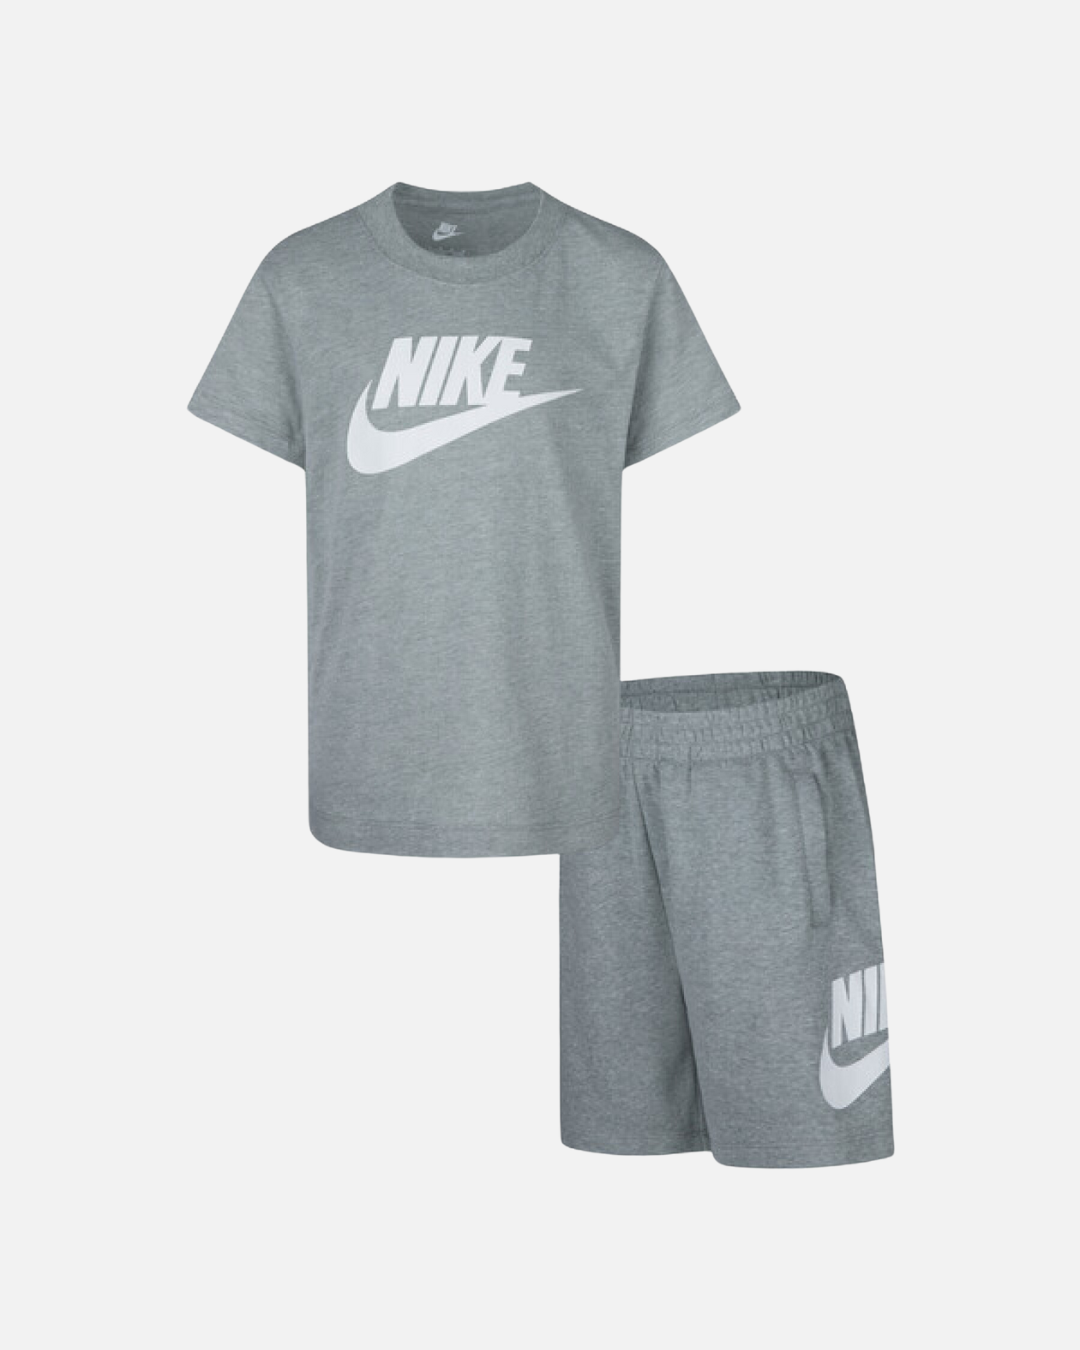 Completo maglietta/pantaloncini Nike da bambino - Grigio